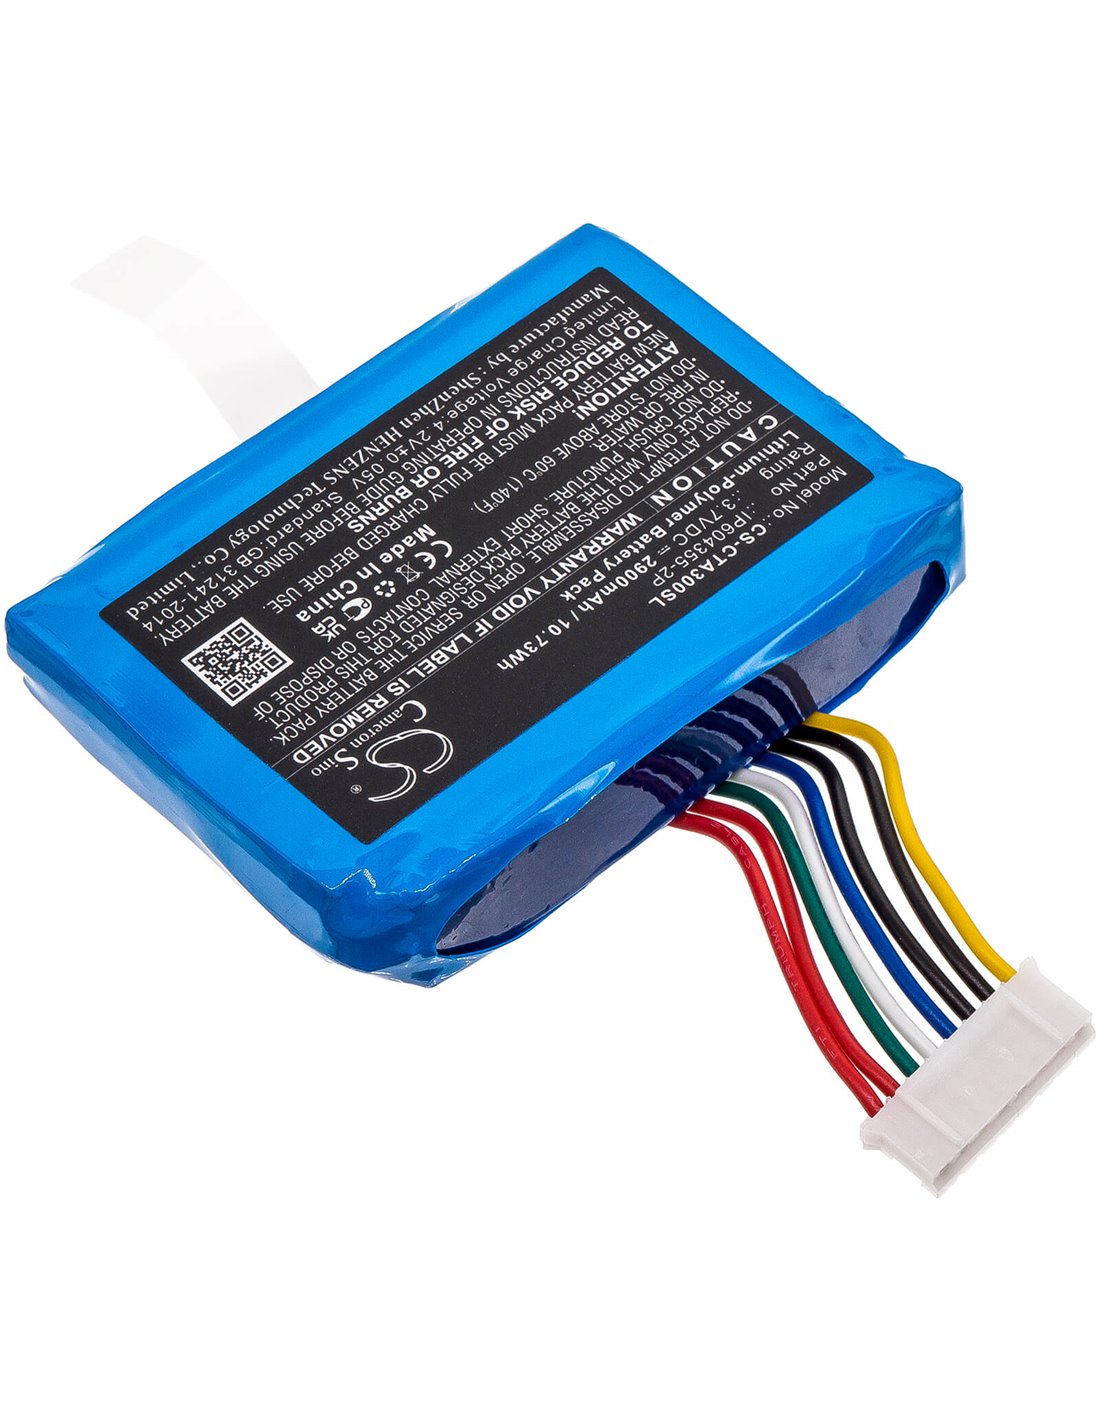 3.7V, 2900mAh, Li-Polymer Battery fits Dejavoo, Z9 Blue, Z9 V3, 10.73Wh